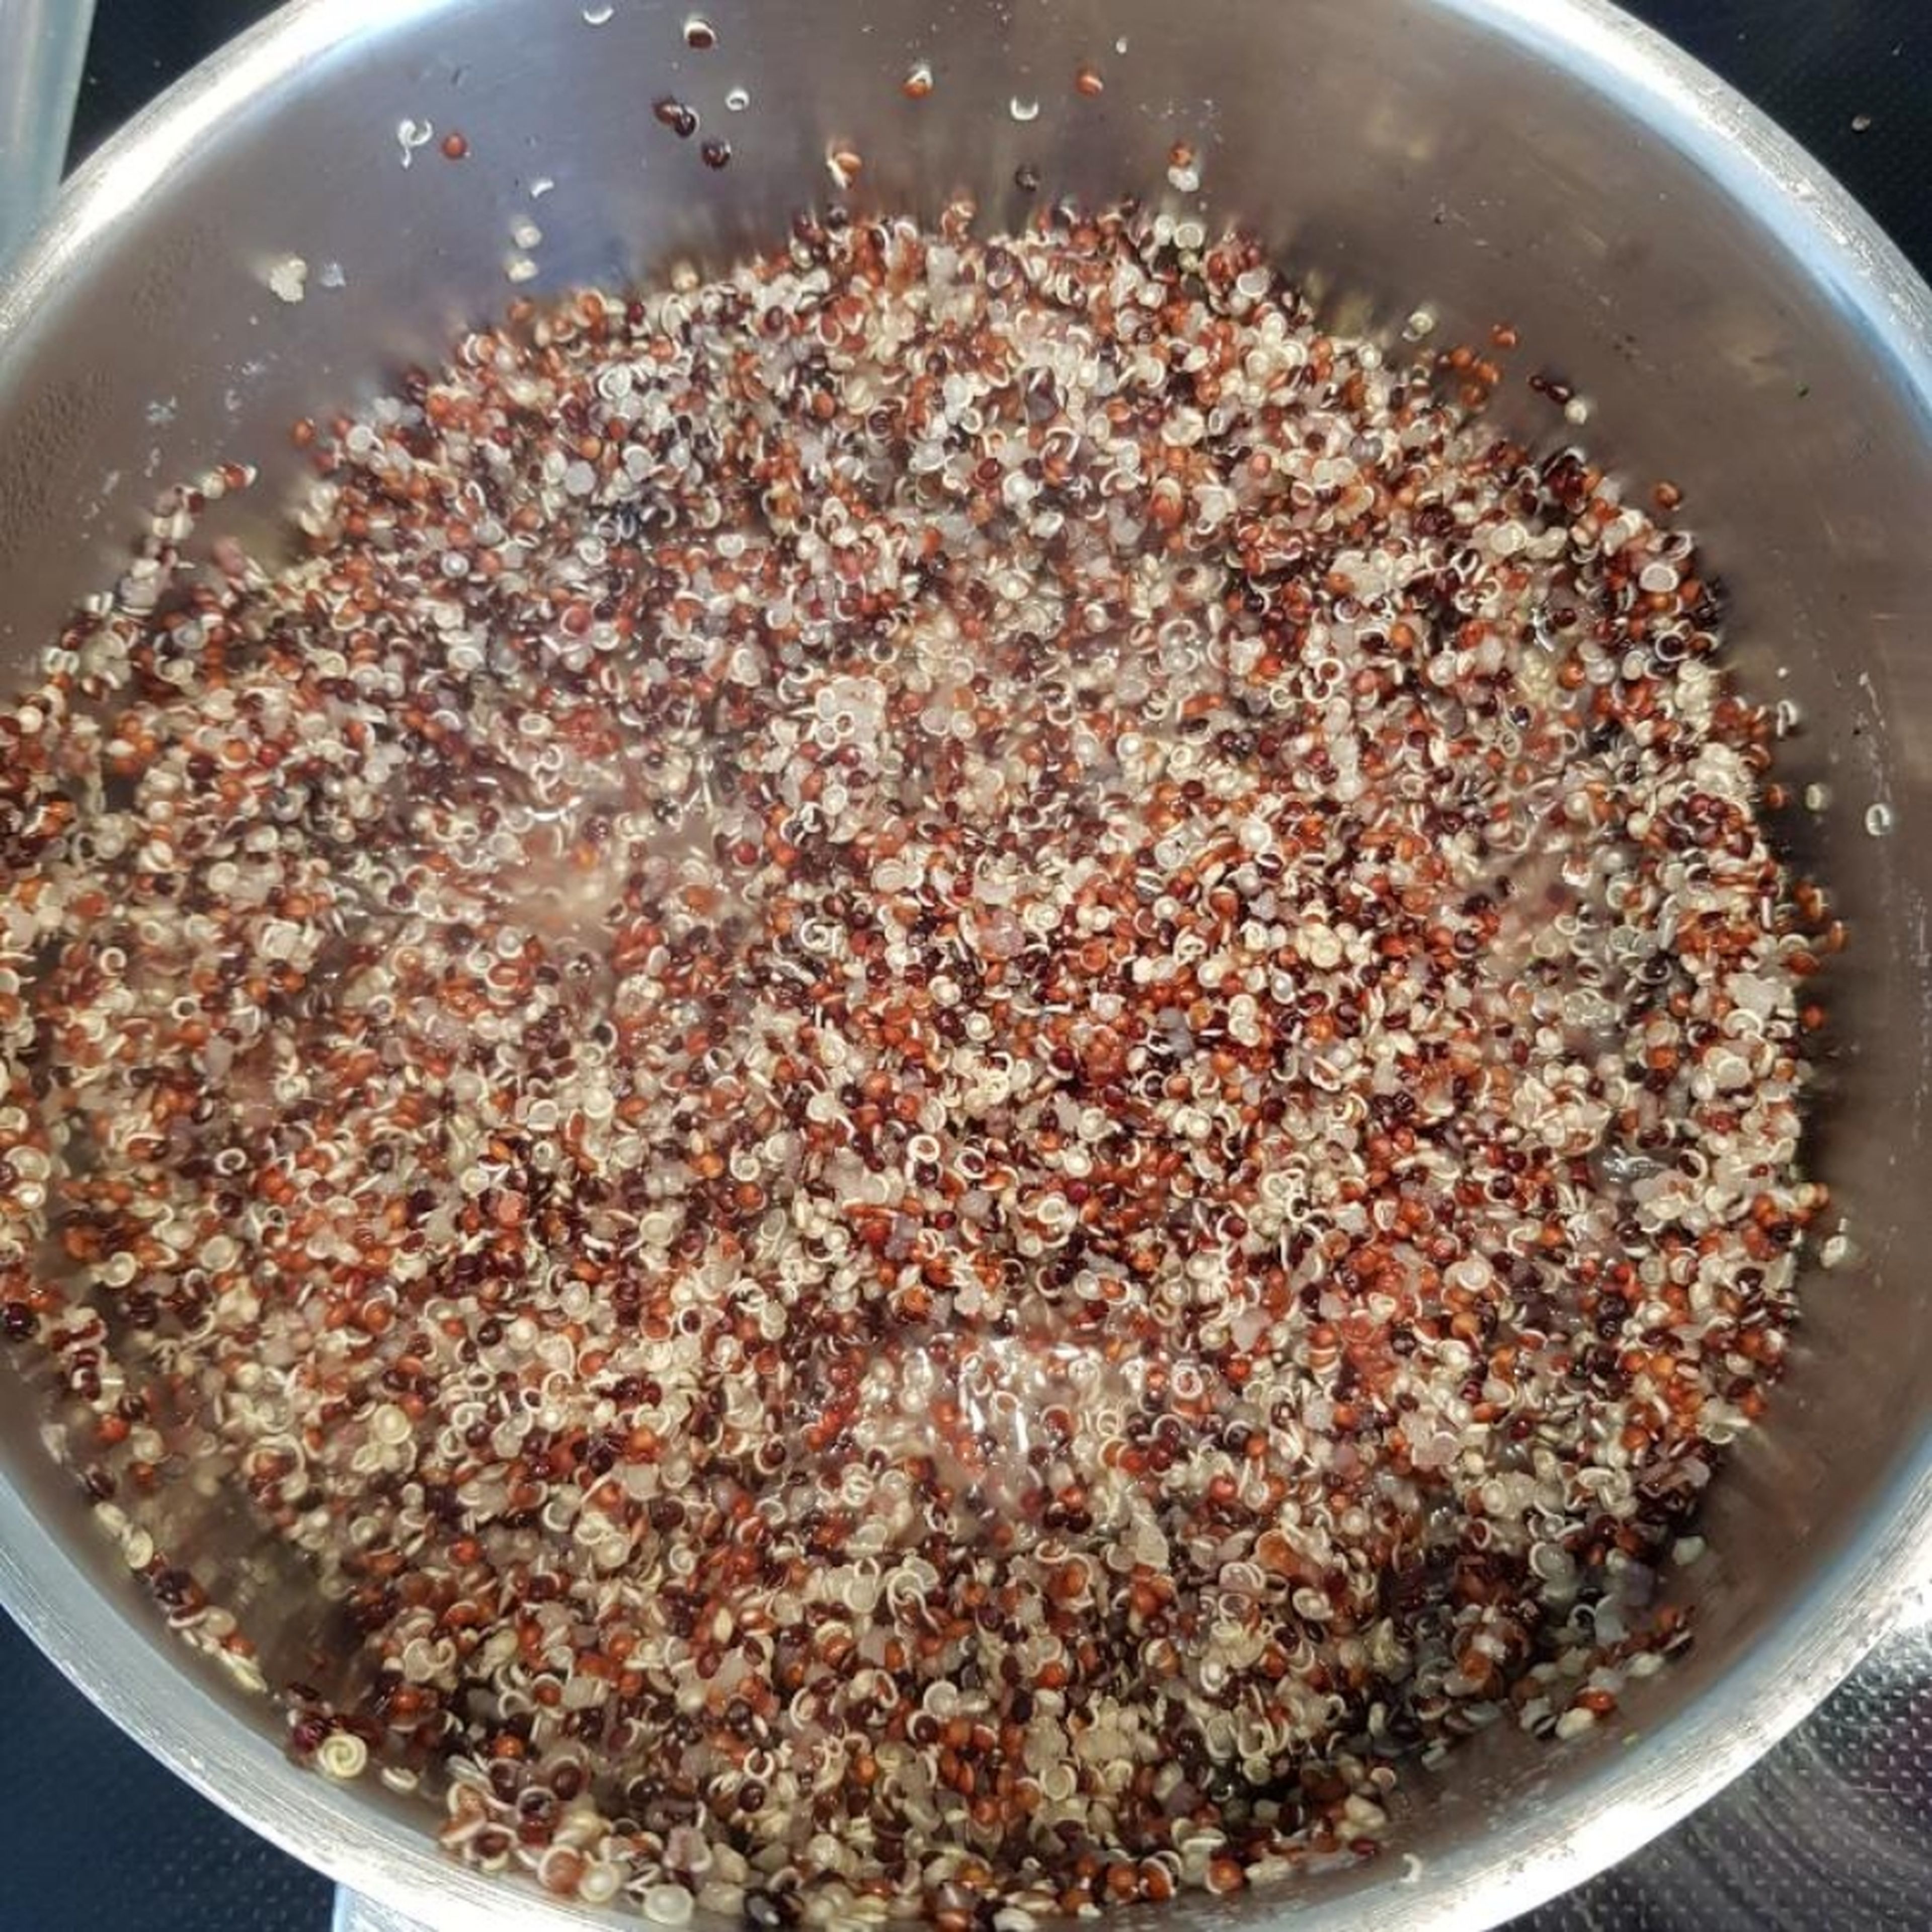 Quinoa mit ca. 600ml Wasser zum Kochen bringen. 10 min. auf kleinster Flamme köcheln lassen (ohne Deckel). Anschließend nochmal 5 min. auf ausgeschalteten Herd stehen lassen bis das Wasser vollständig verdampft ist.